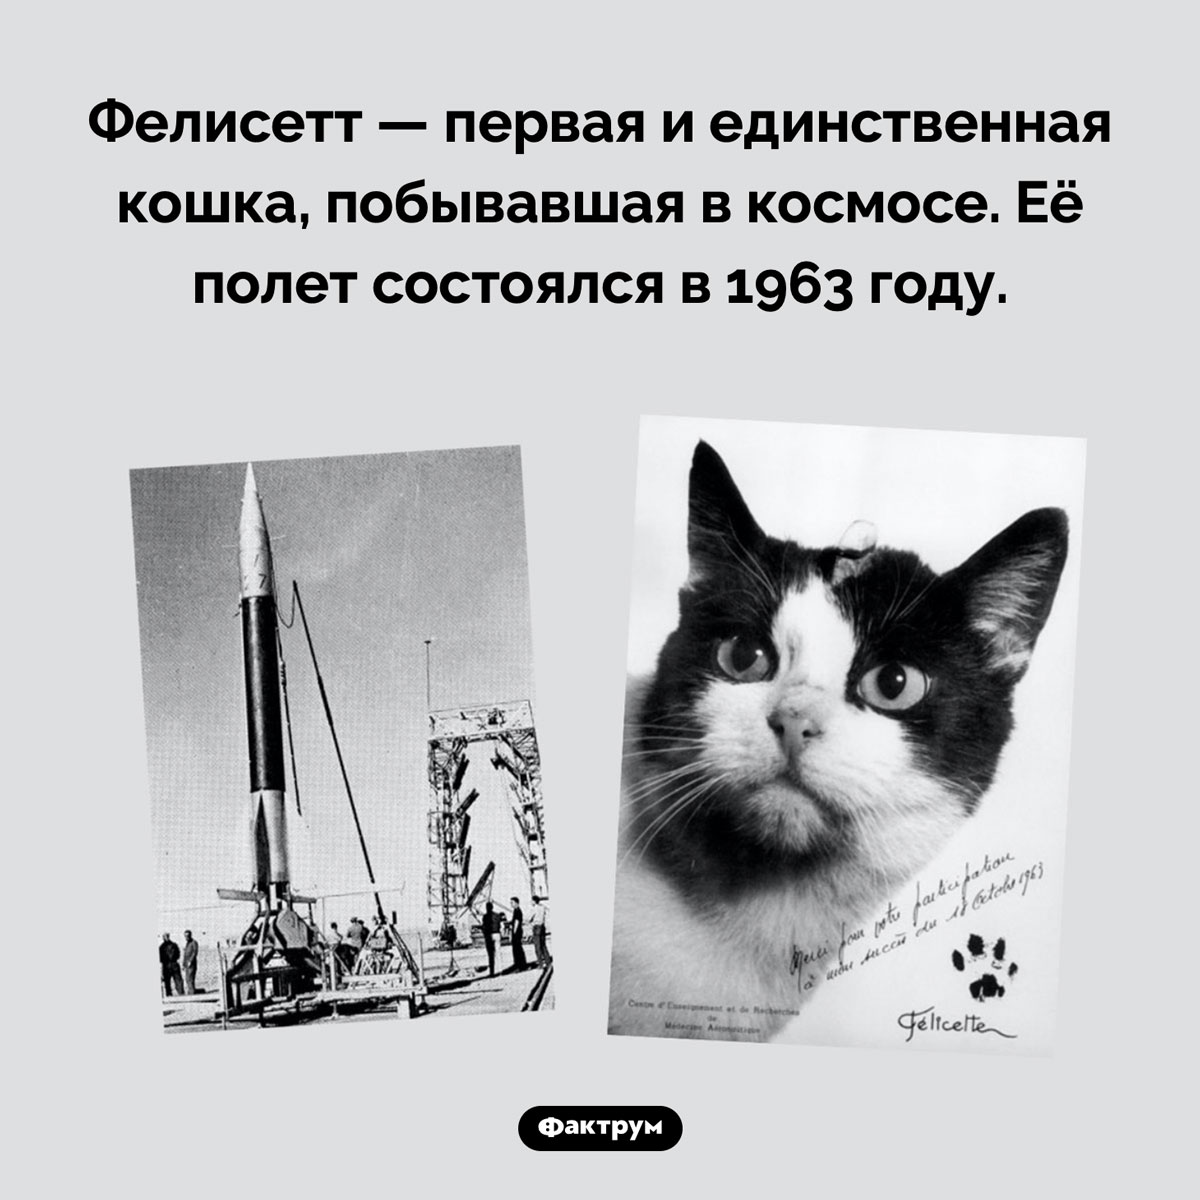 Первая кошка в космосе. Фелисетт — первая и единственная кошка, побывавшая в космосе. Её полет состоялся в 1963 году.